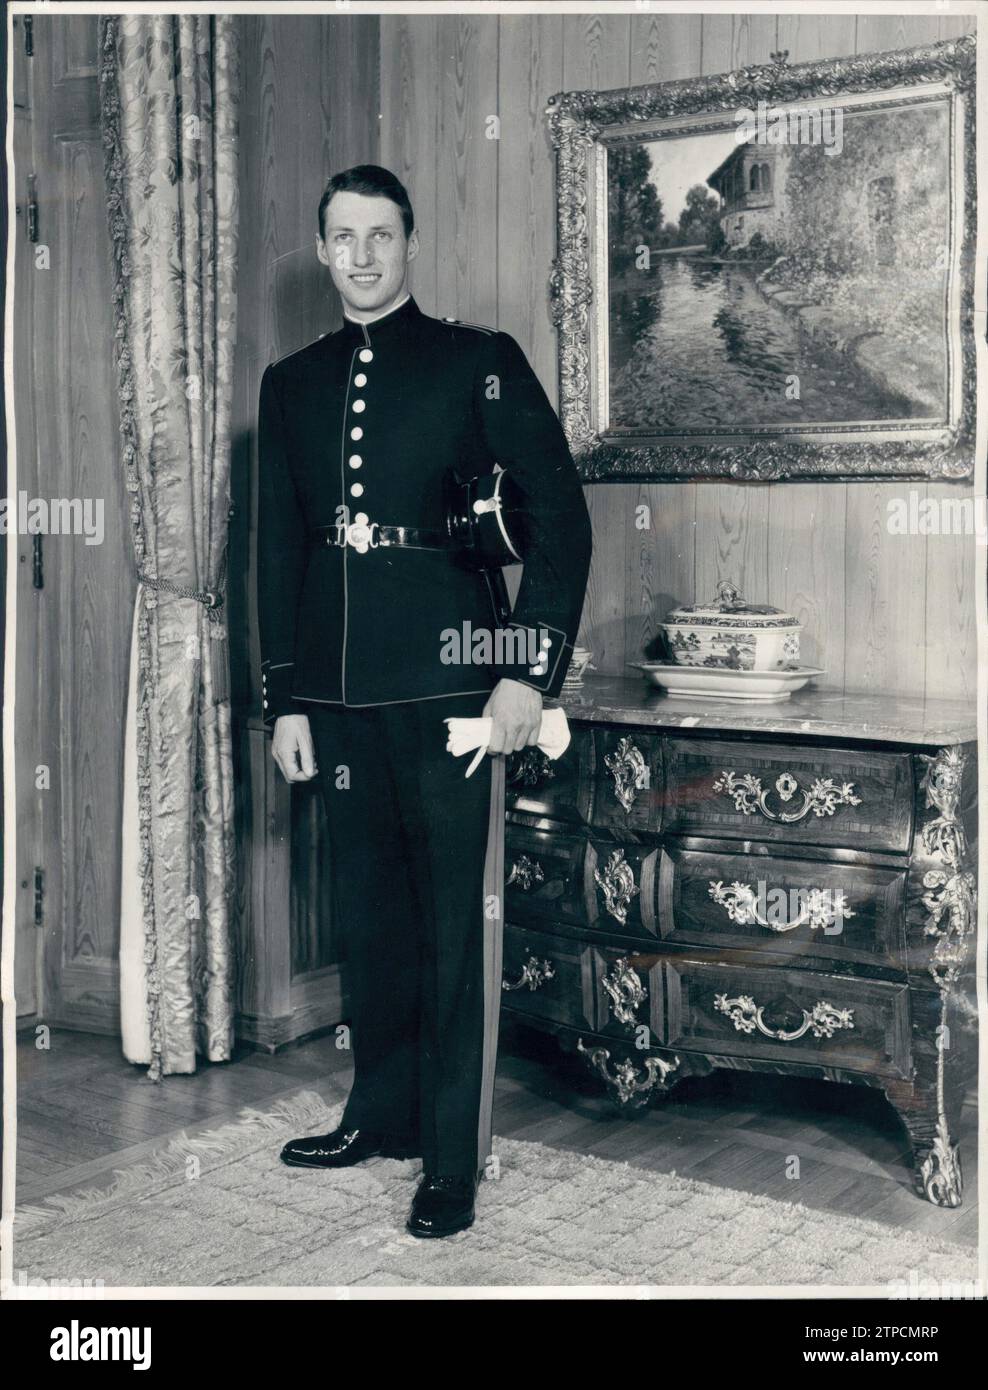 12/31/1957. Prince Harald of Norway in the Norwegian War Academy cadet uniform. Credit: Album / Archivo ABC / Torremocha Stock Photo